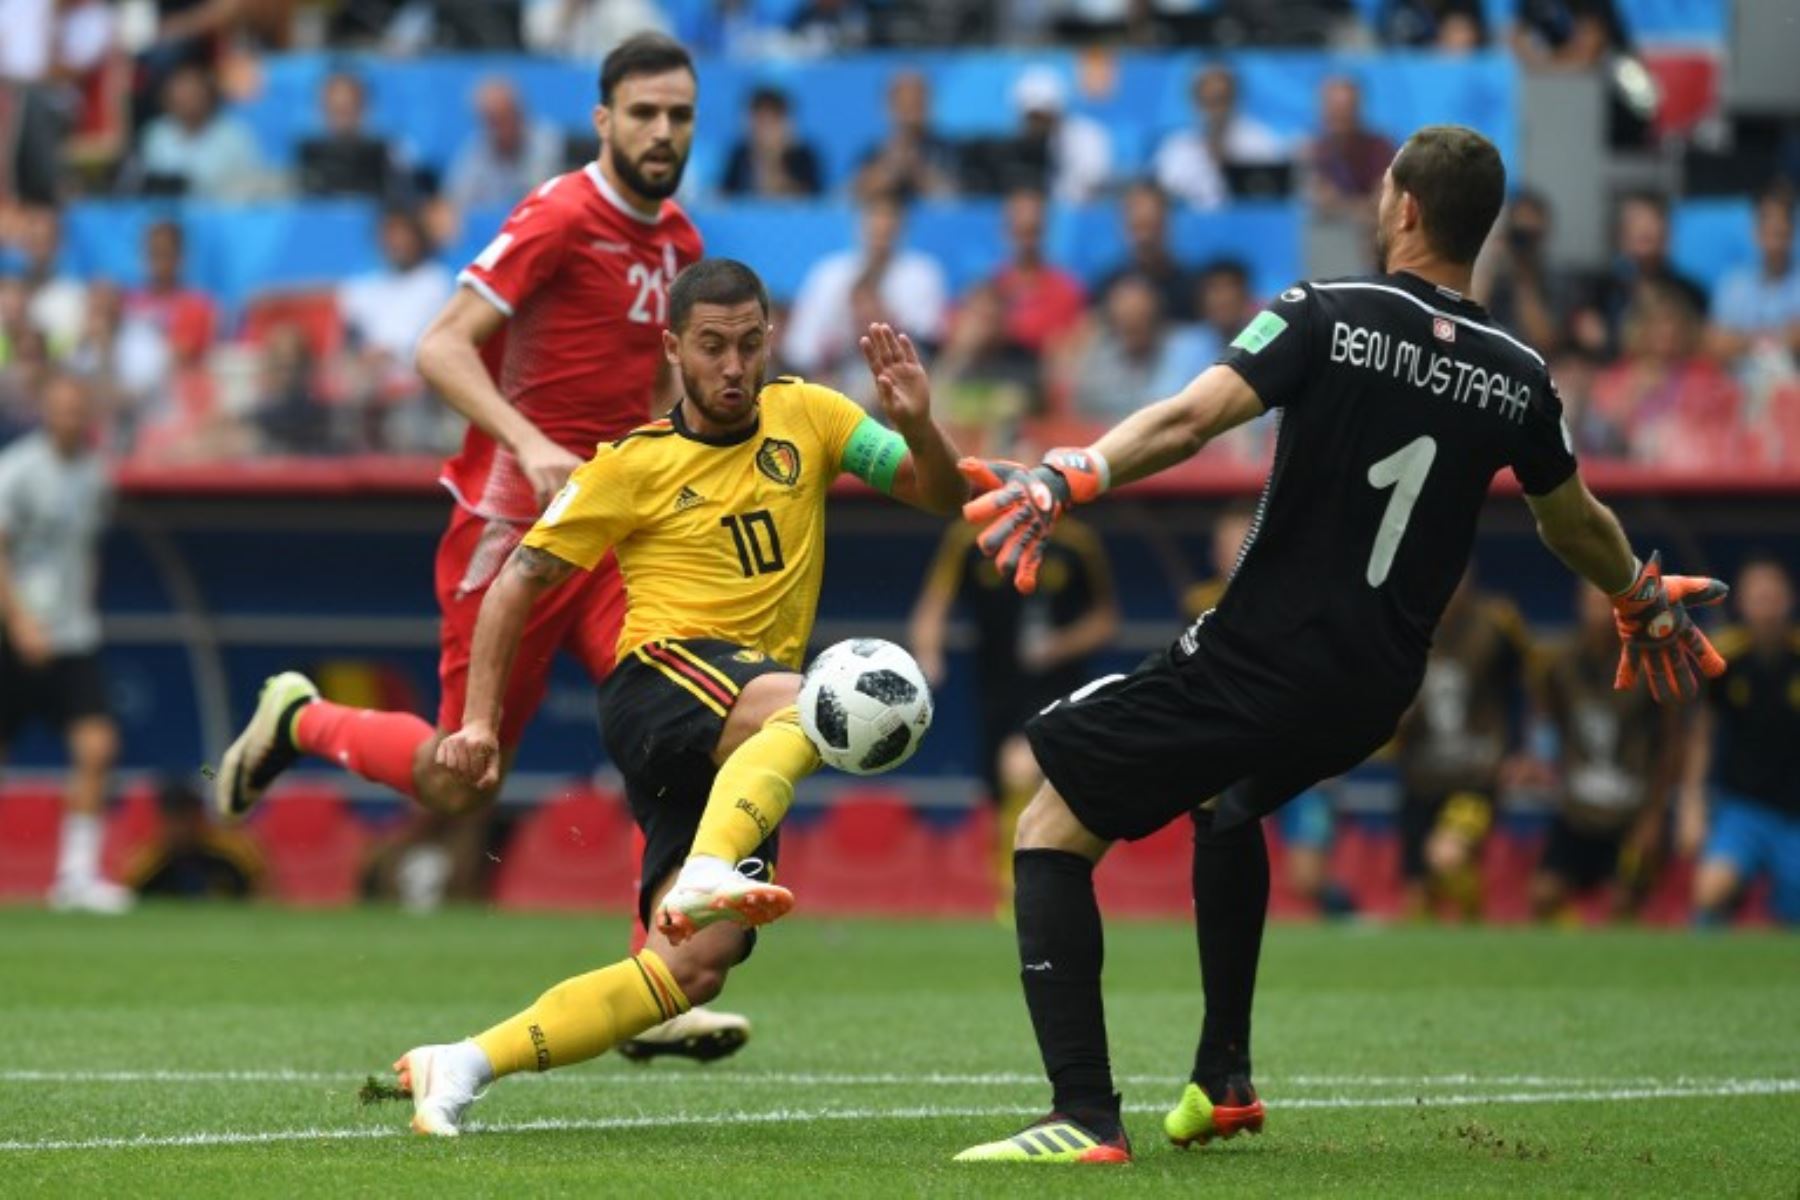 El delantero belga Eden Hazard golpea el balón sobre el portero de Túnez Farouk Ben Mustapha durante el partido de fútbol del Grupo G de la Copa del Mundo Rusia 2018 entre Bélgica y Túnez en el Estadio Spartak de Moscú.Foto:AFP